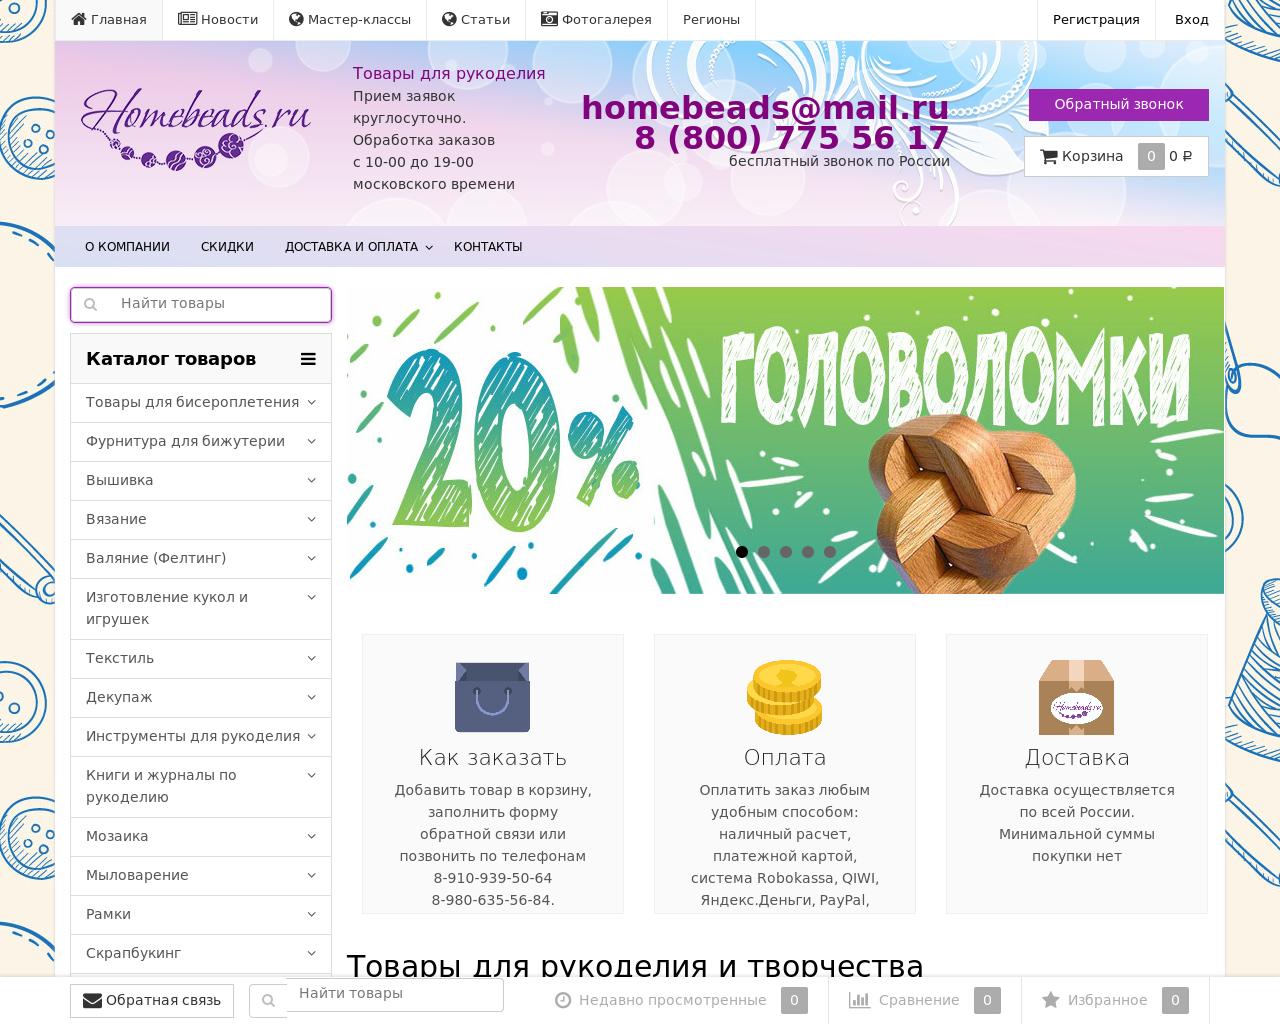 Изображение сайта homebeads.ru в разрешении 1280x1024